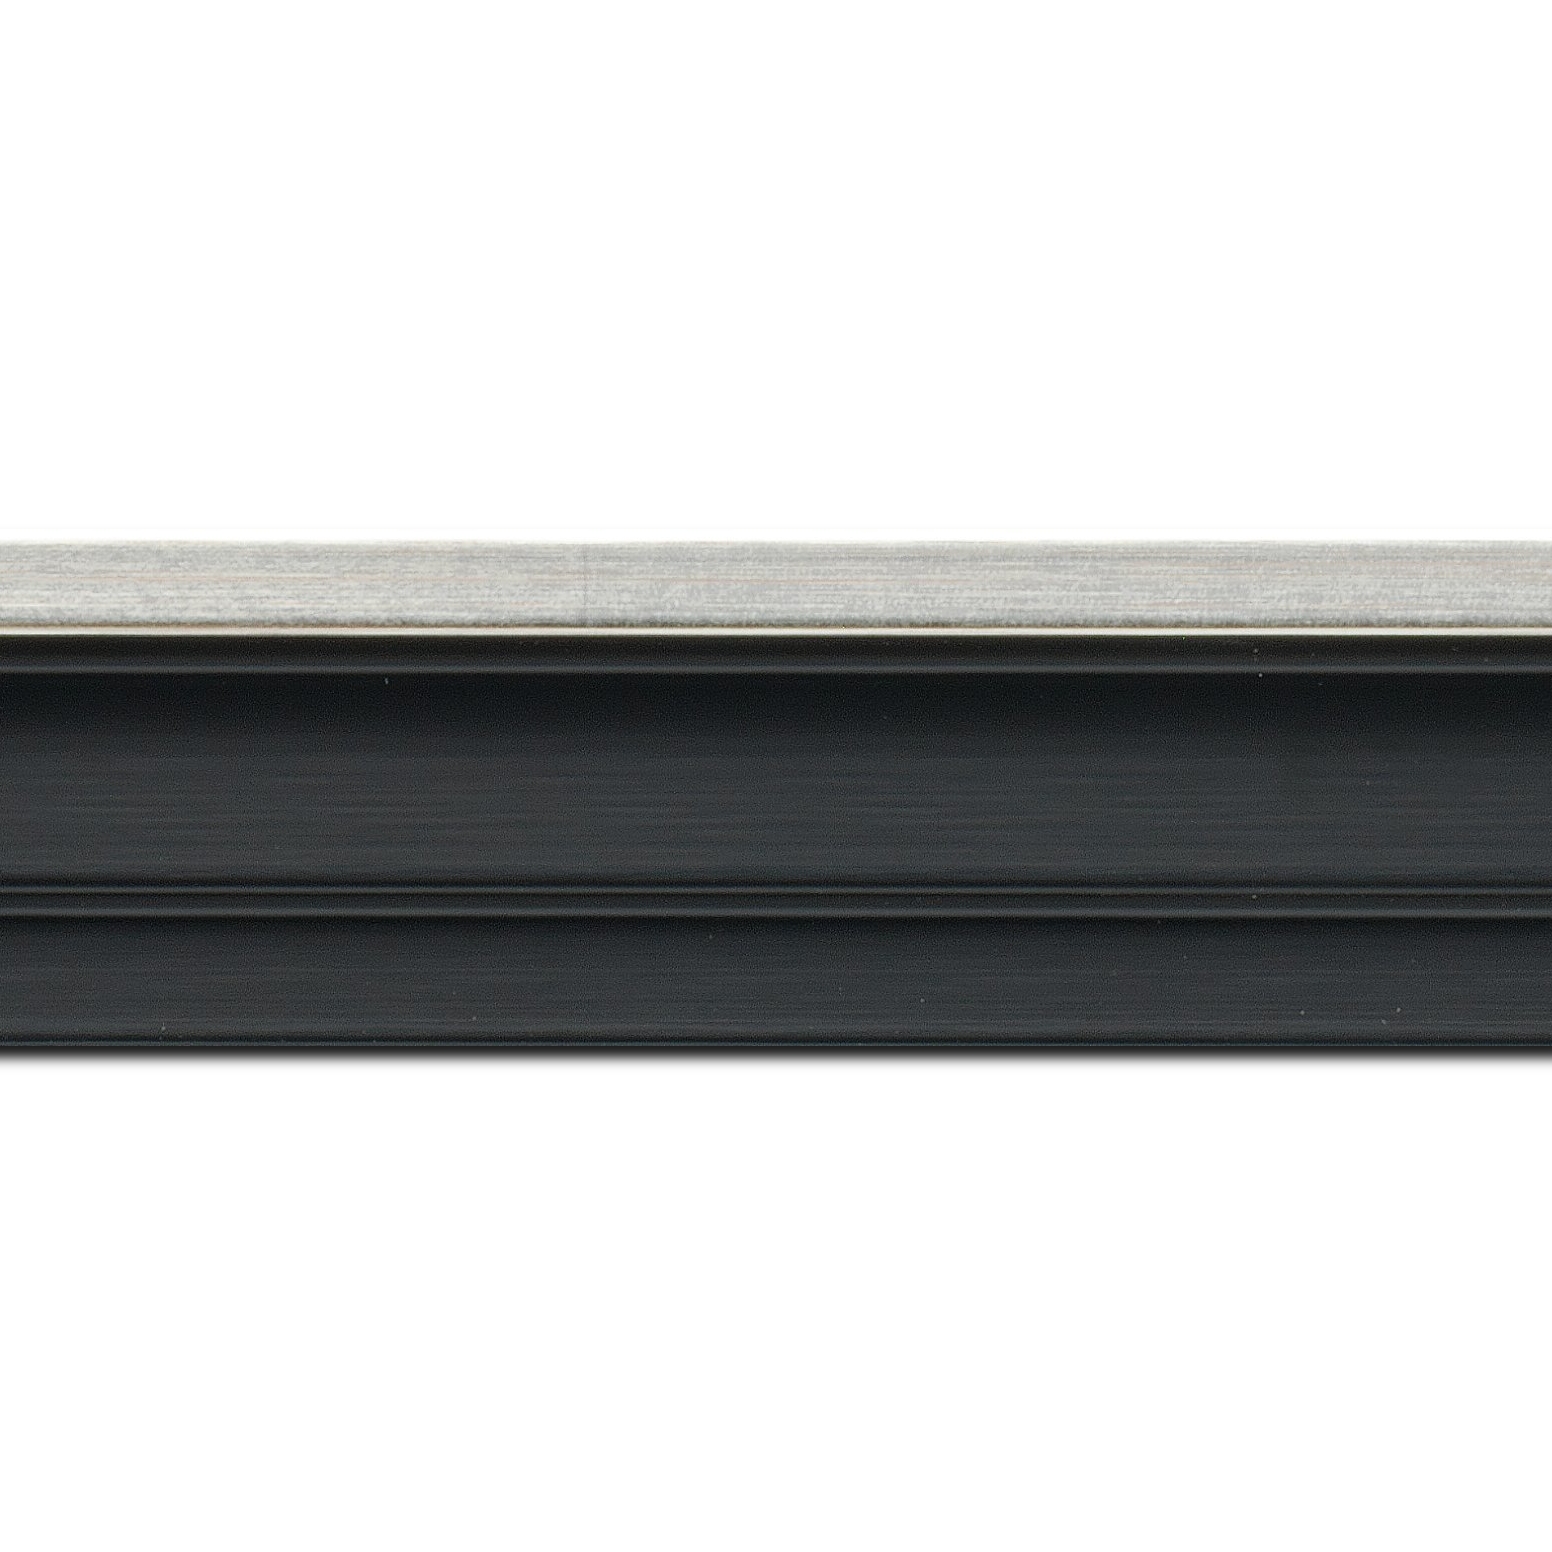 Pack par 12m, bois caisse américaine profil escalier largeur 4.4cm noir mat  filet argent (spécialement conçu pour les châssis d'une épaisseur jusqu’à 2.5cm )(longueur baguette pouvant varier entre 2.40m et 3m selon arrivage des bois)